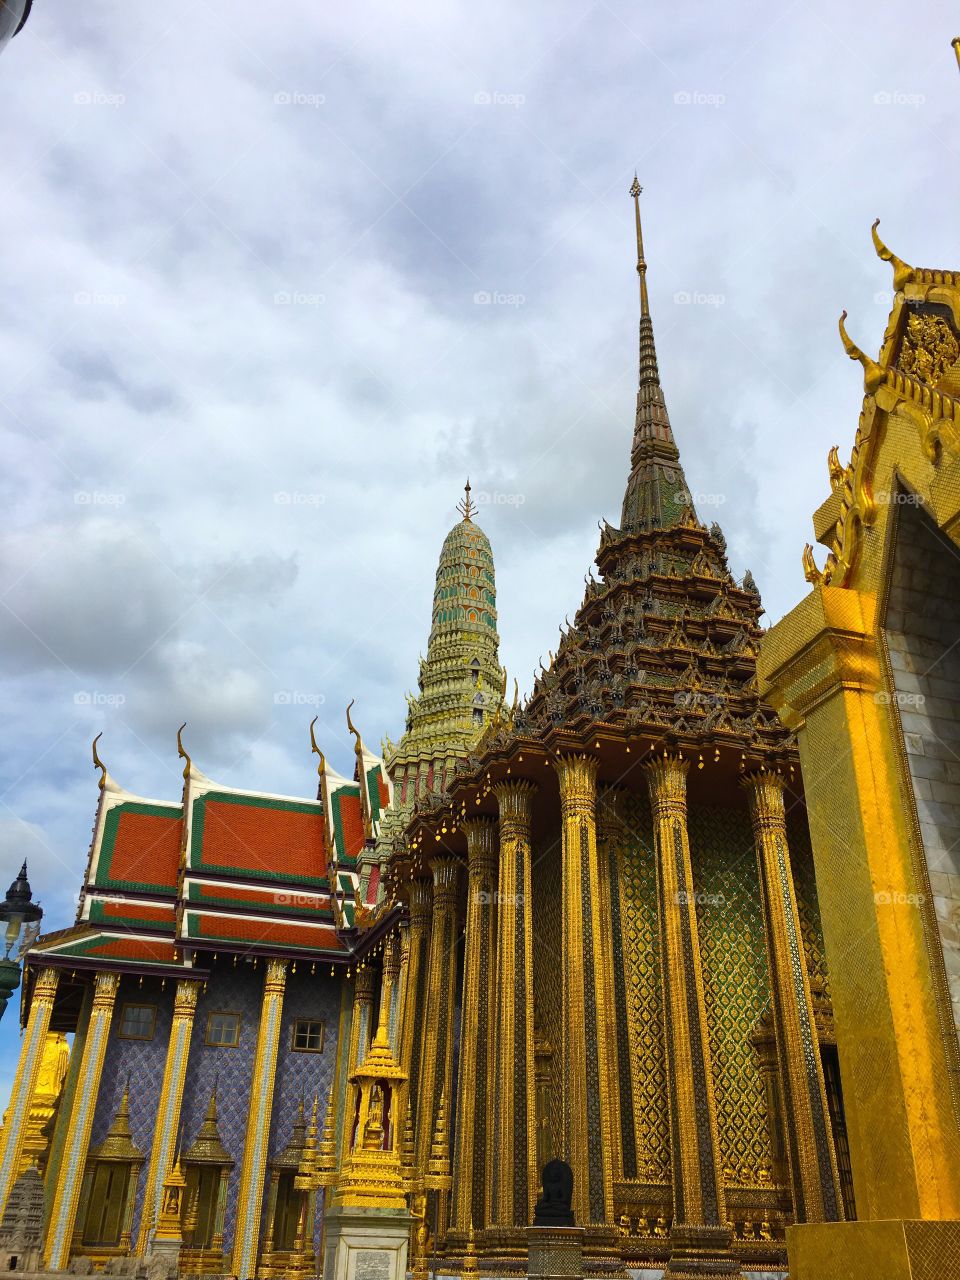 Grand Palace / Bangkok Thailand 18